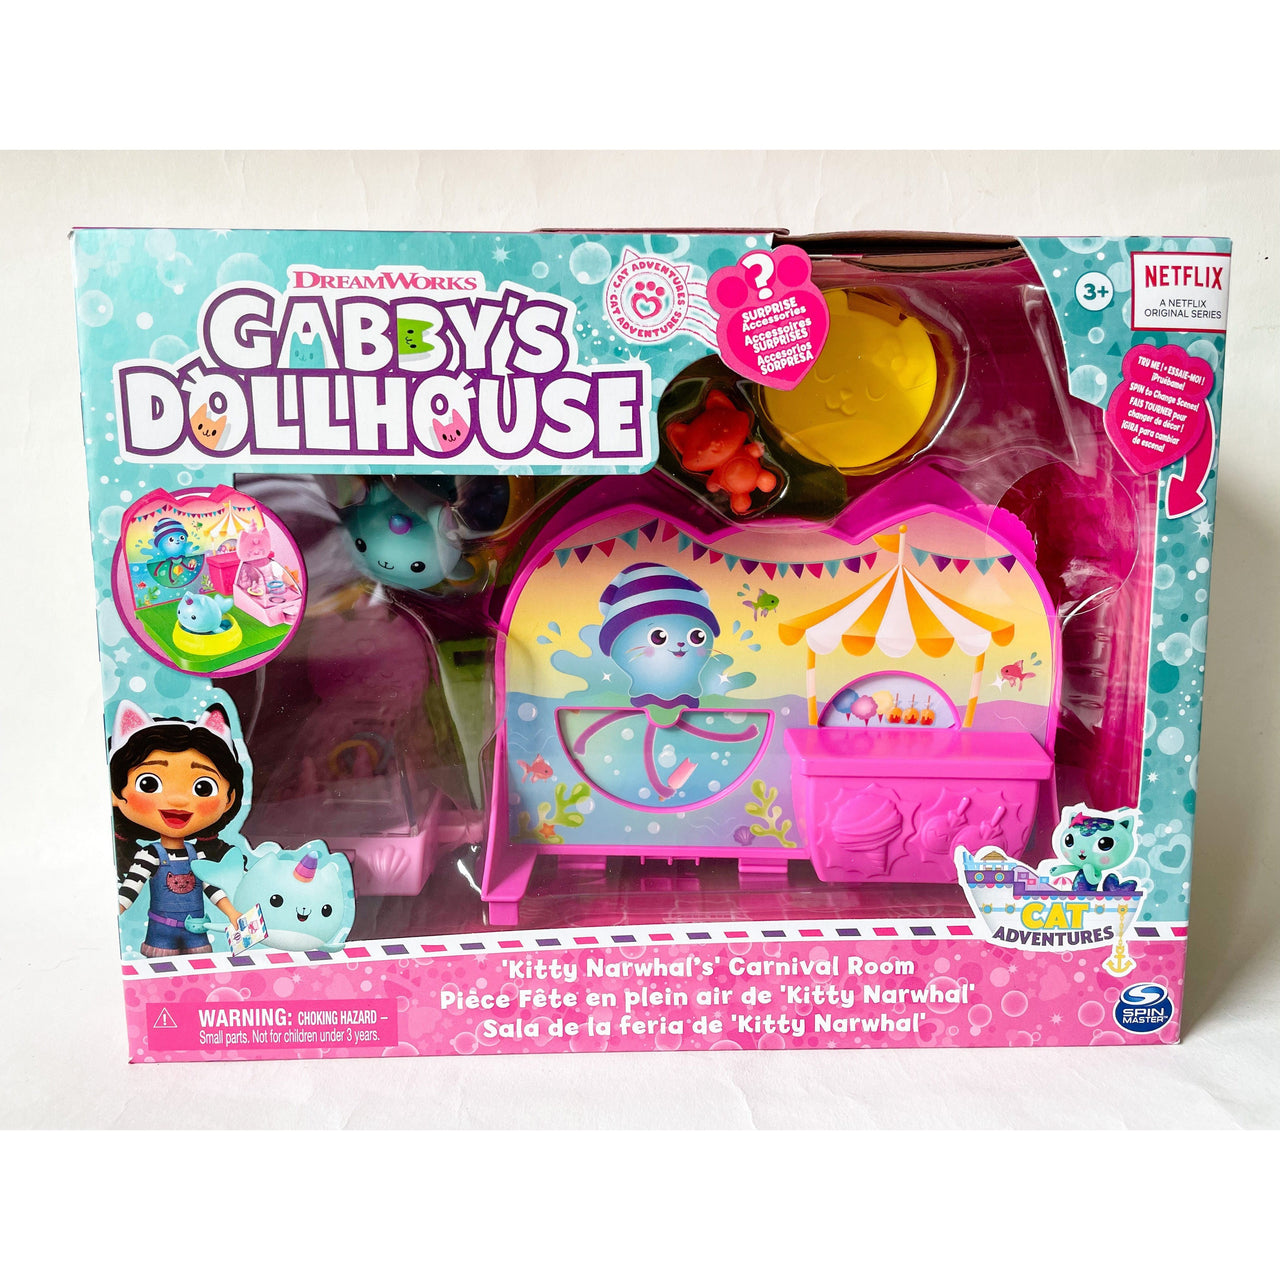 Gabby's Dollhouse Kitty Narwhal’s Carnival Room Gabby's Dollhouse